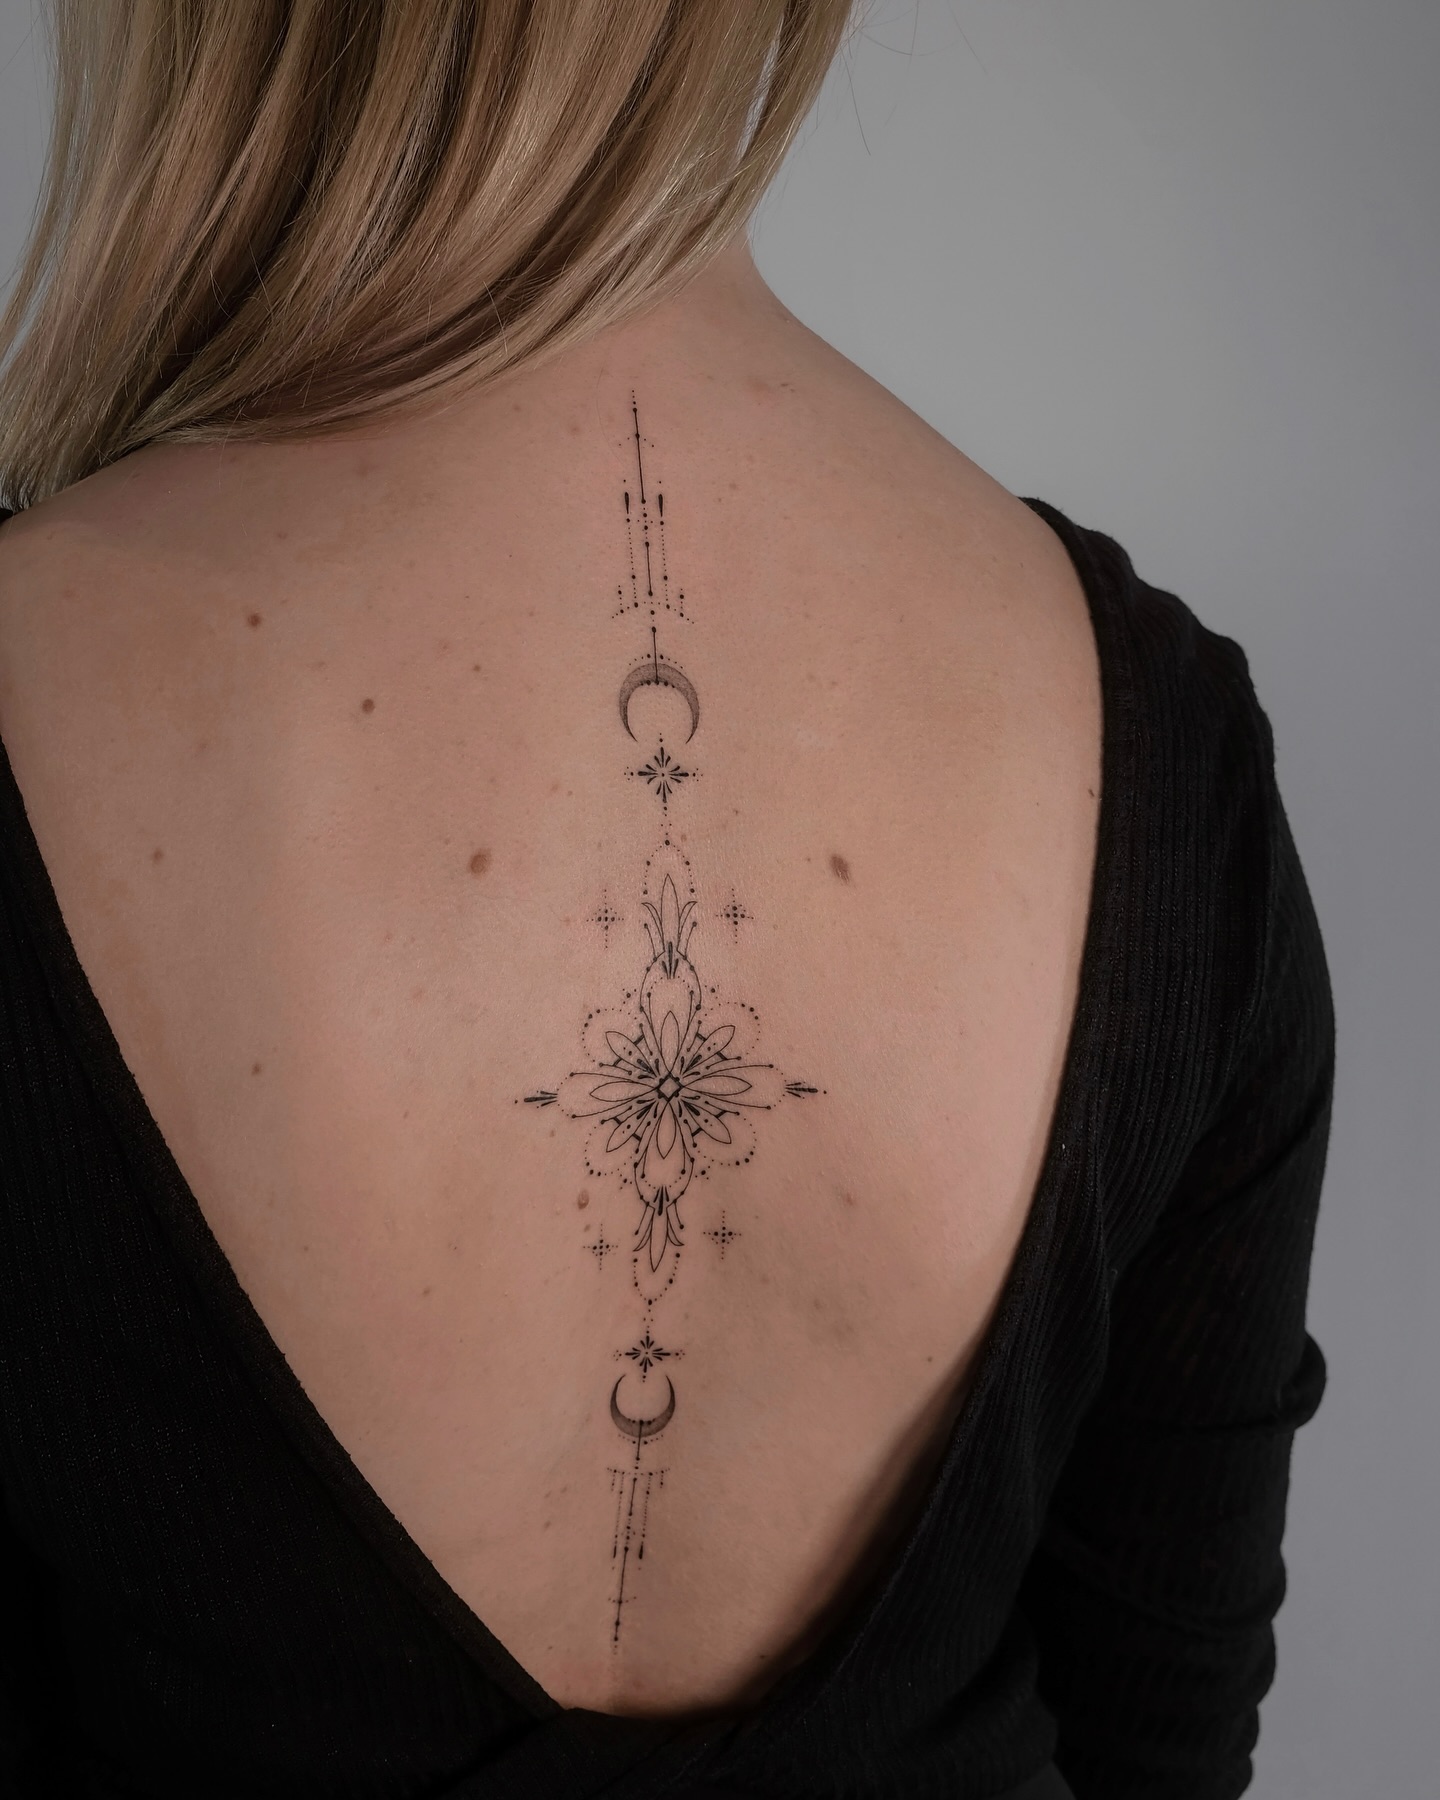 spine design by monochrom.ink